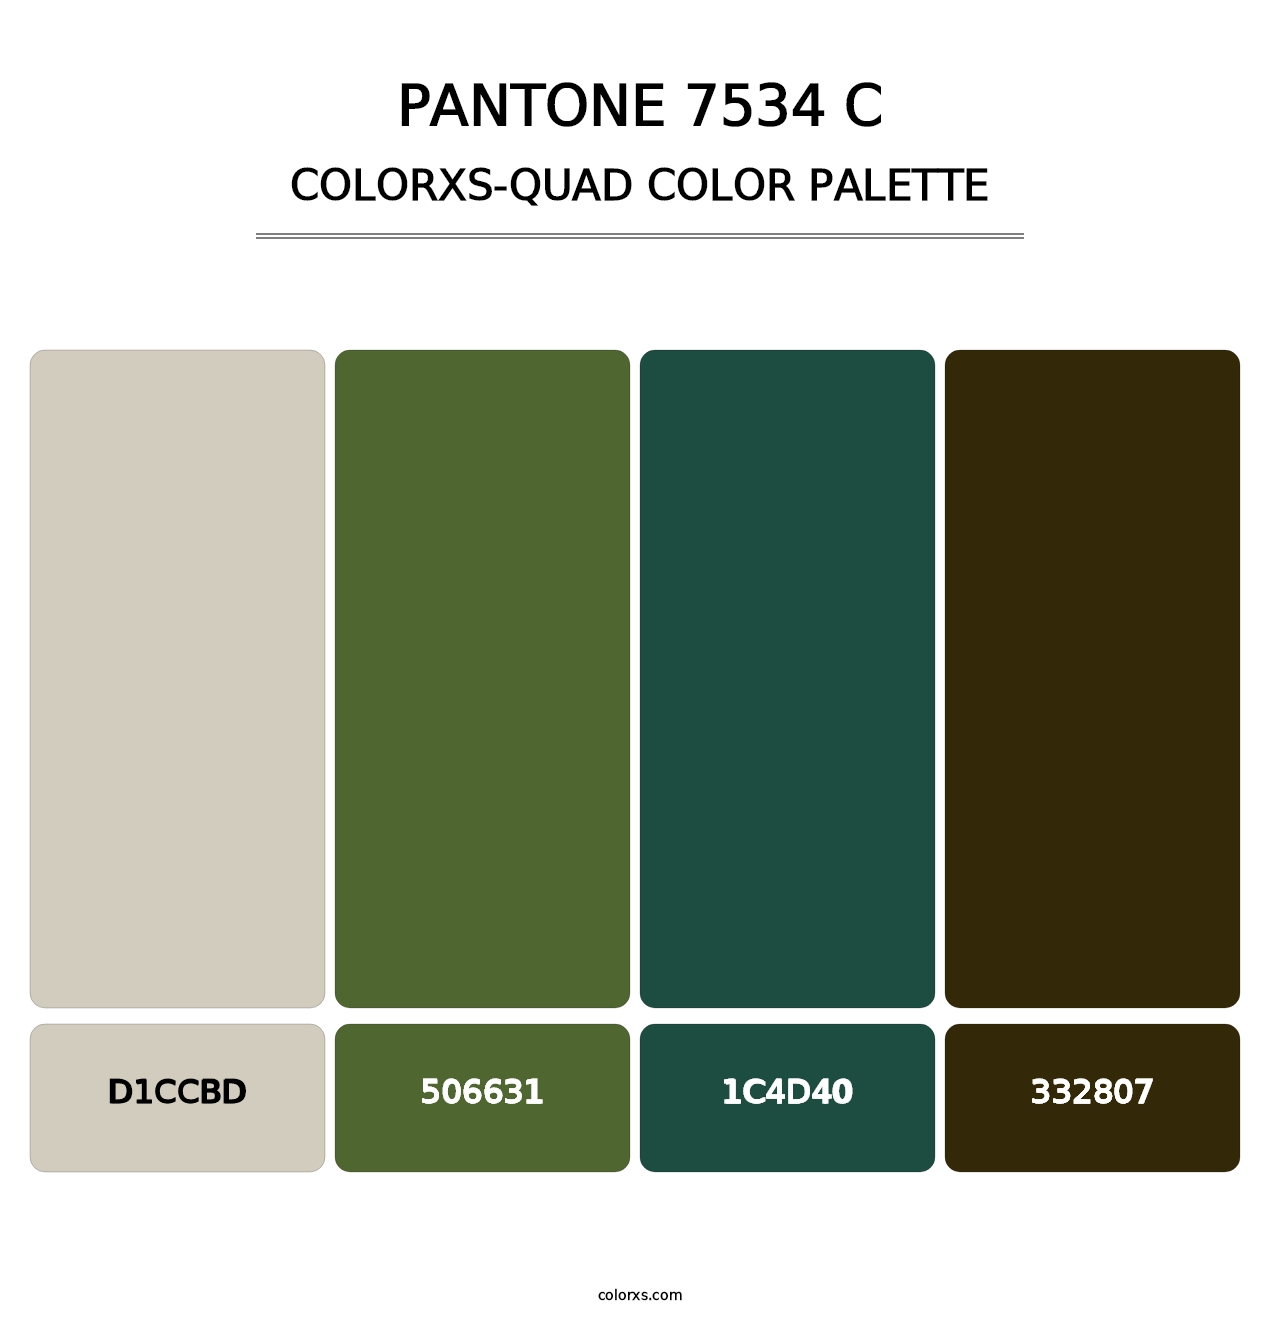 PANTONE 7534 C - Colorxs Quad Palette